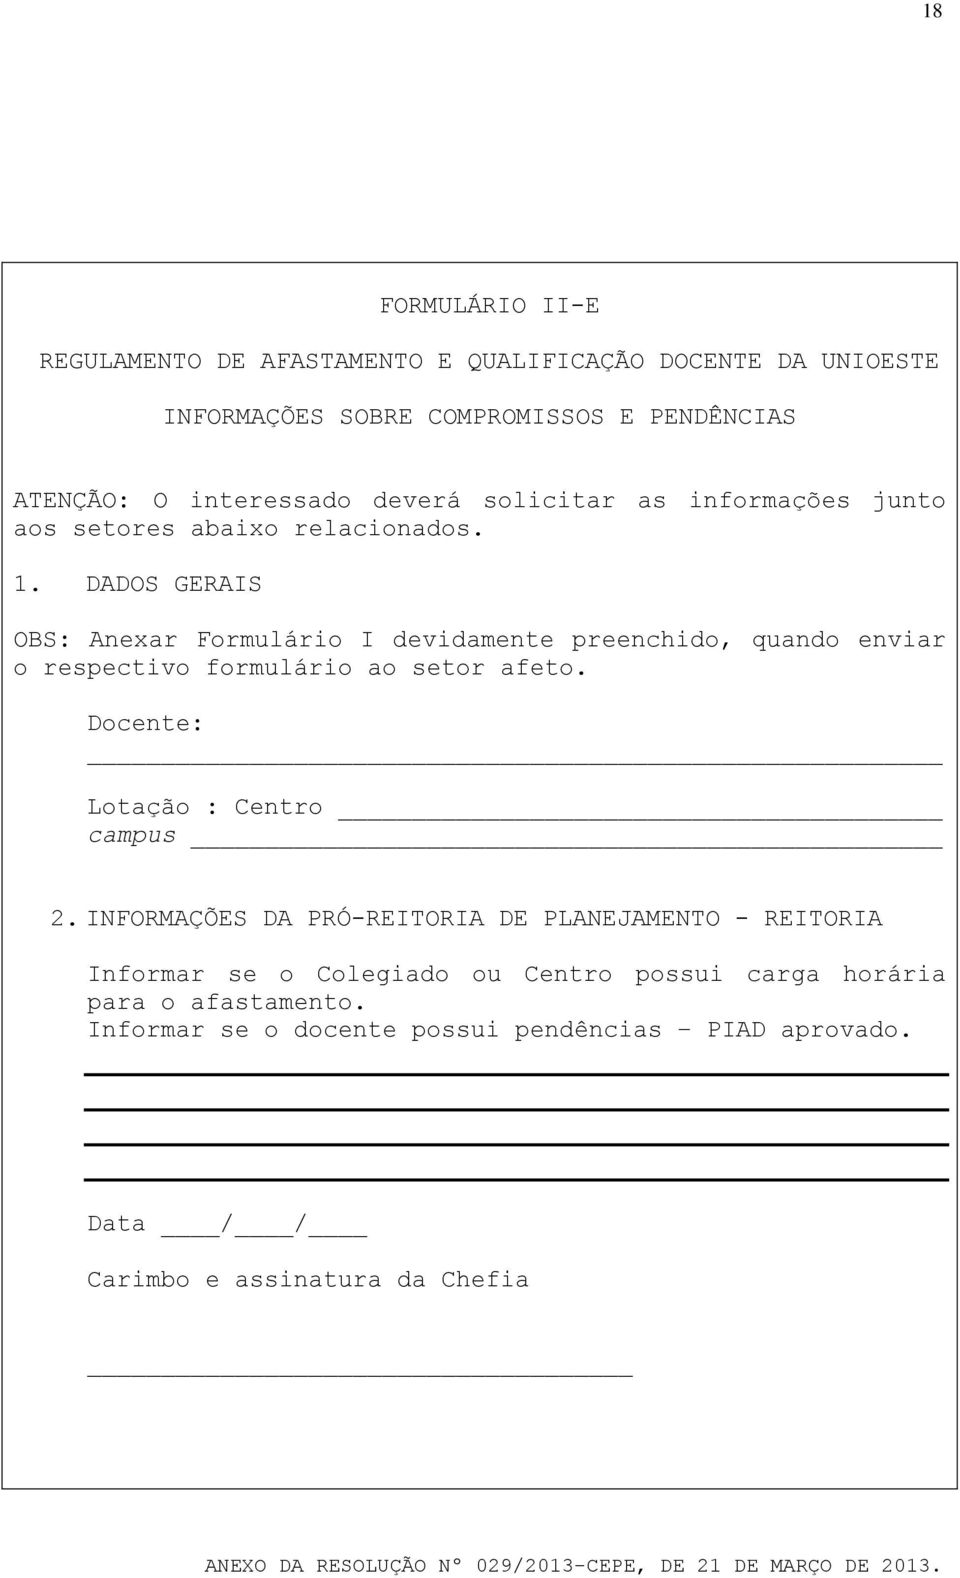 DADOS GERAIS OBS: Anexar Formulário I devidamente preenchido, quando enviar o respectivo formulário ao setor afeto.